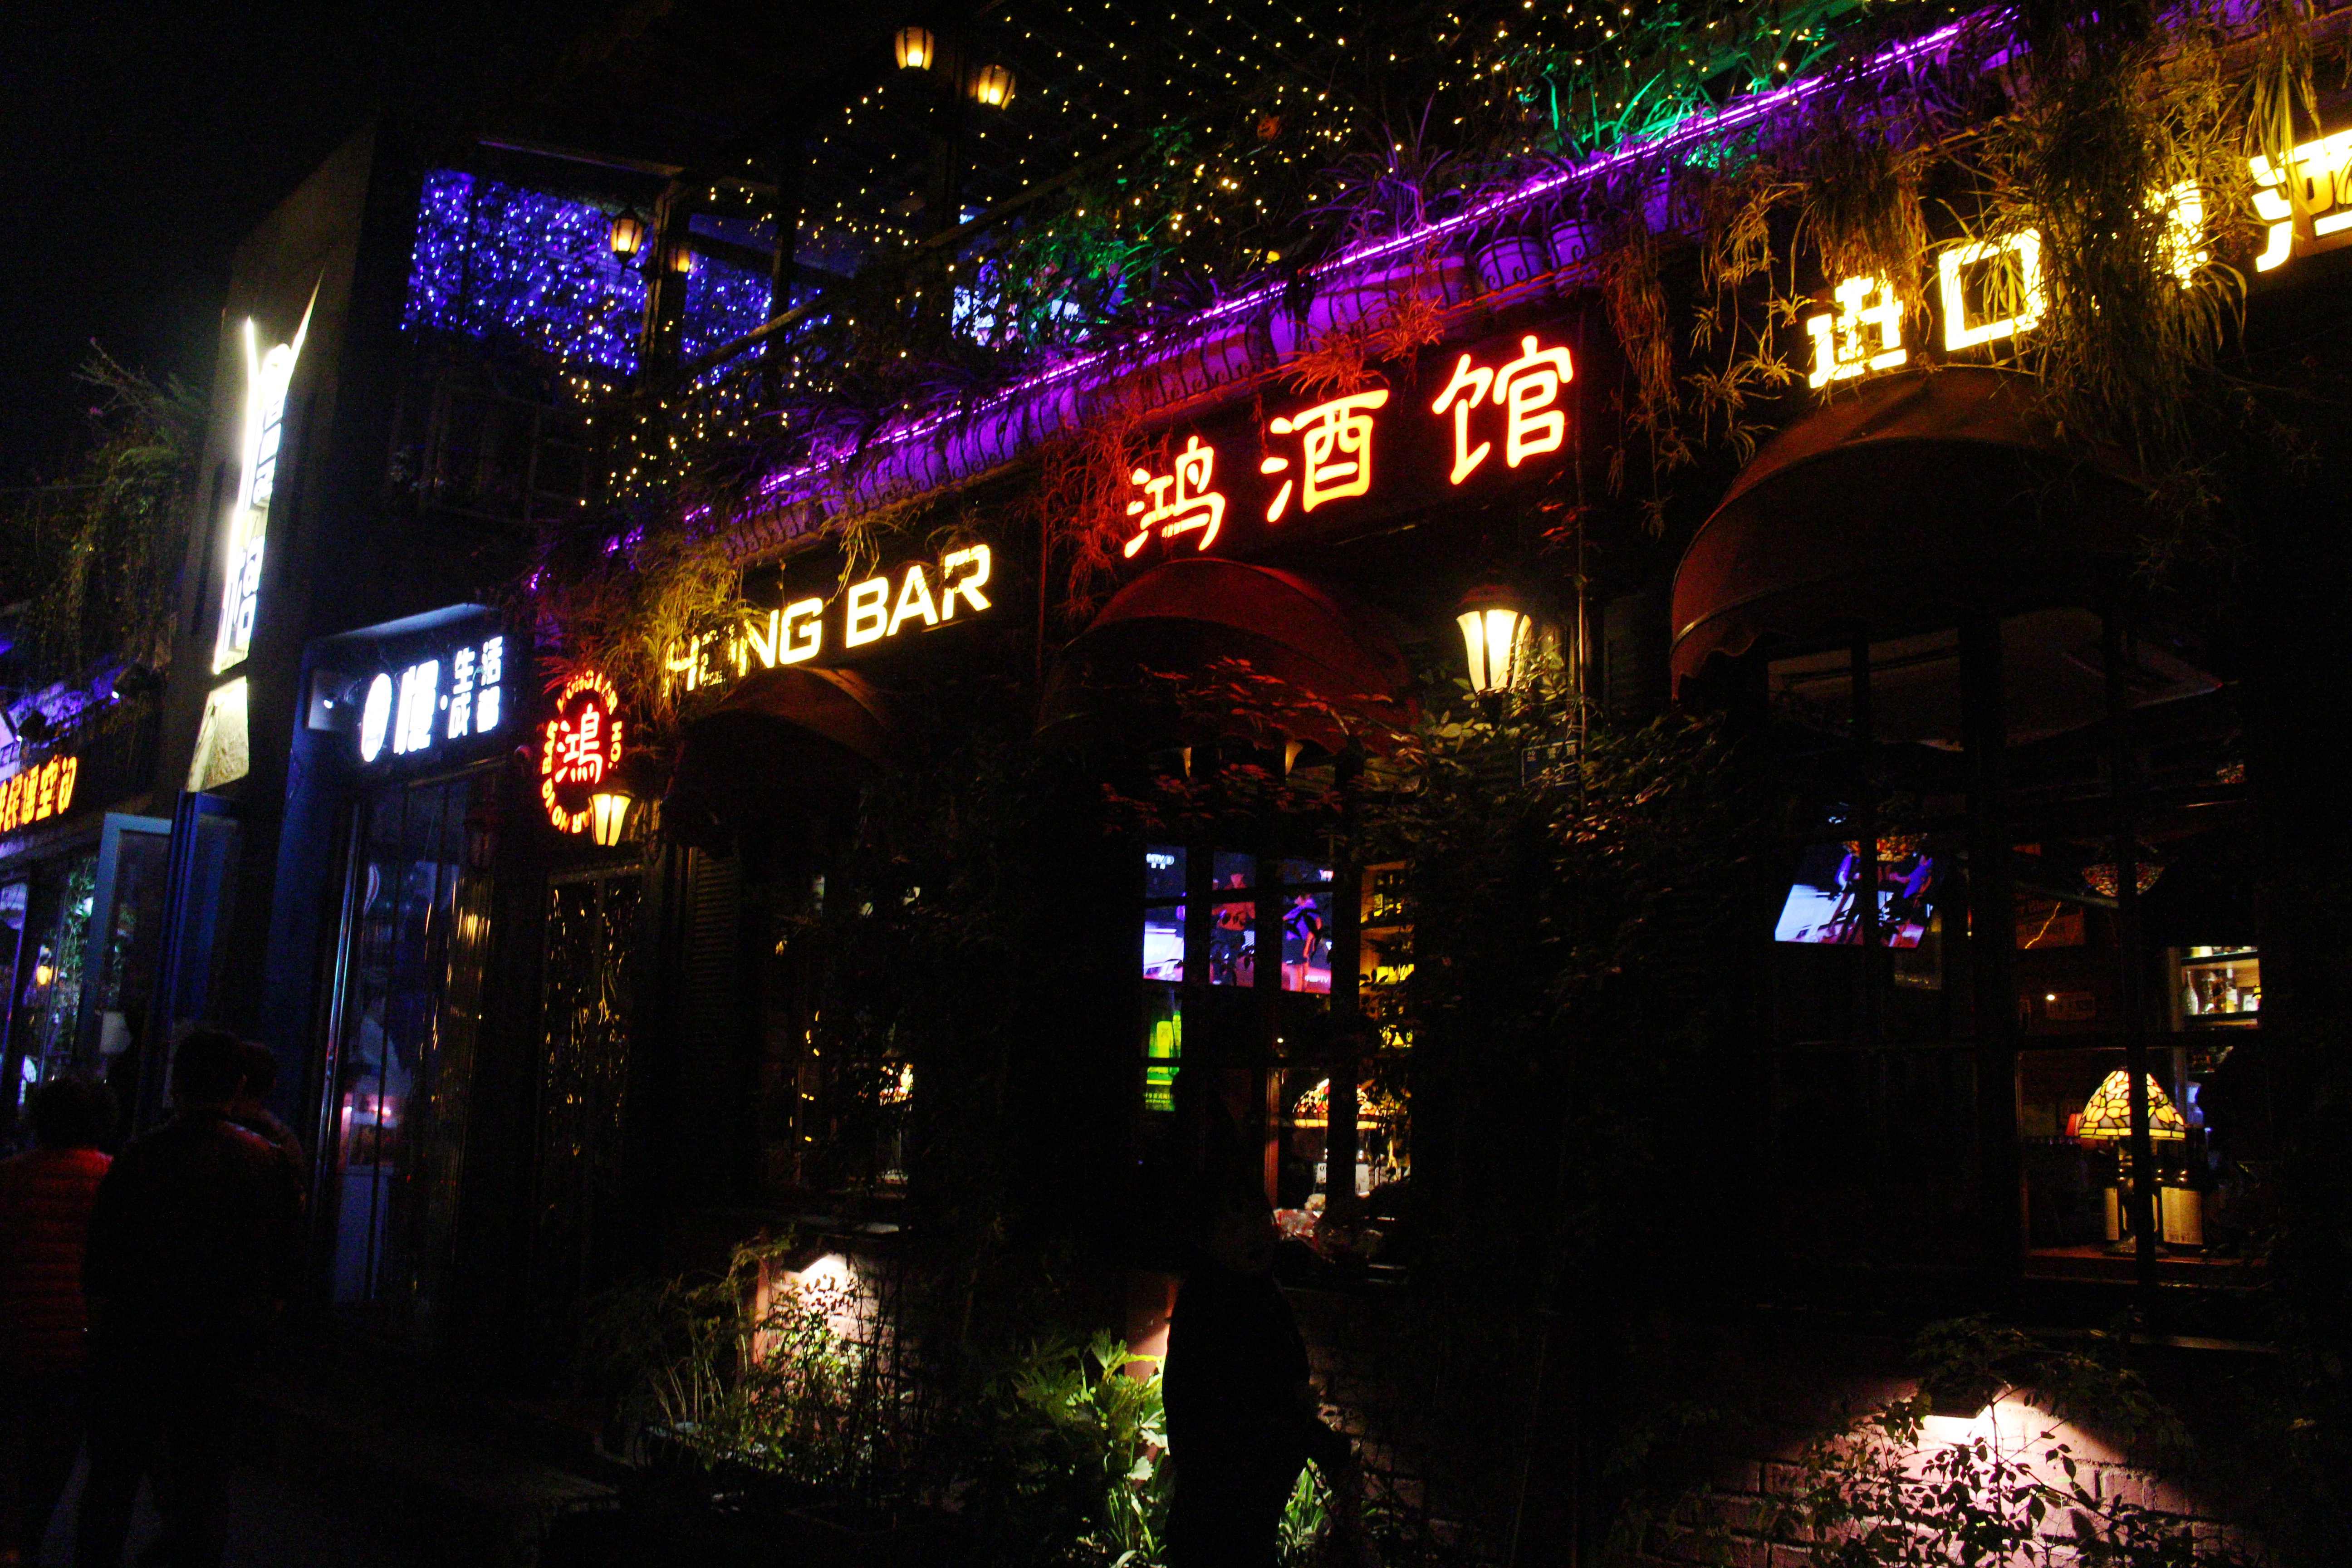 这里是成都酒吧文化集中地,以古桥为名,堪称成都夜晚最热闹地方